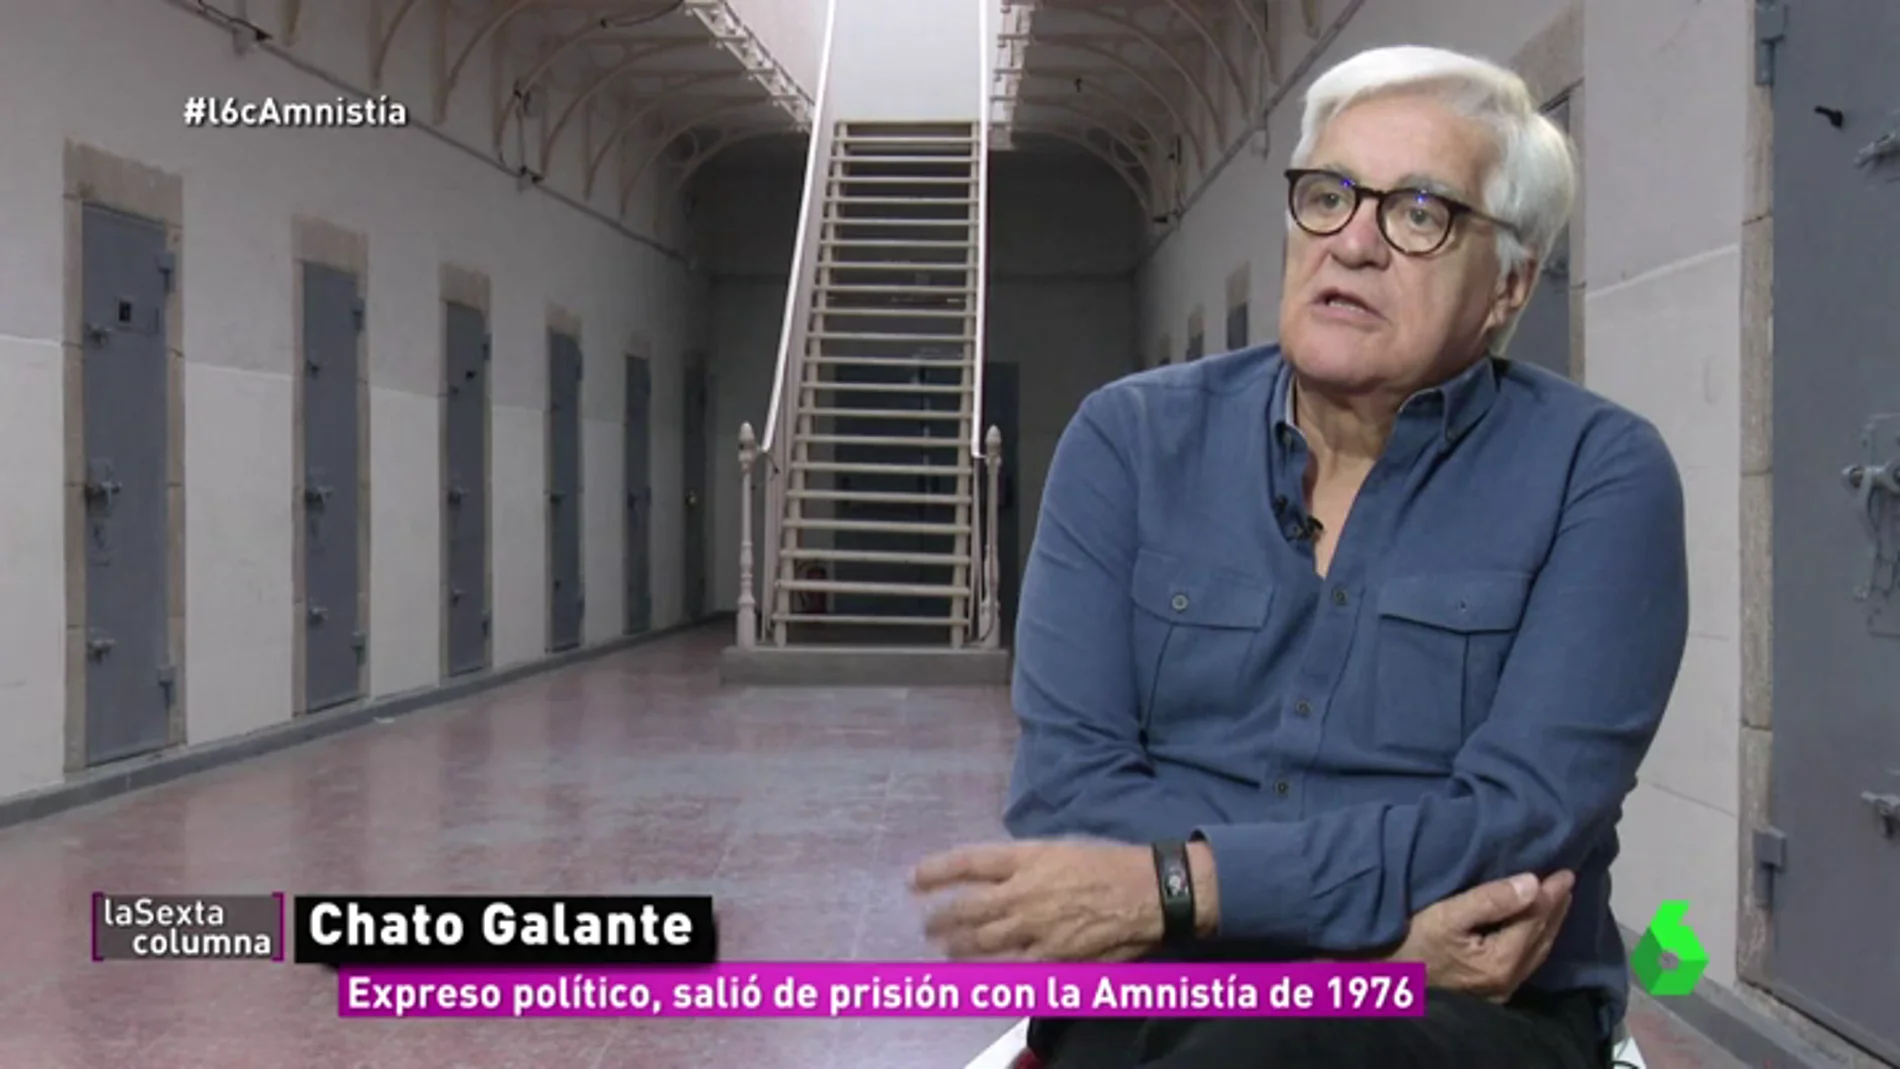 Chato Galante, expreso político que salió de prisión en 1976